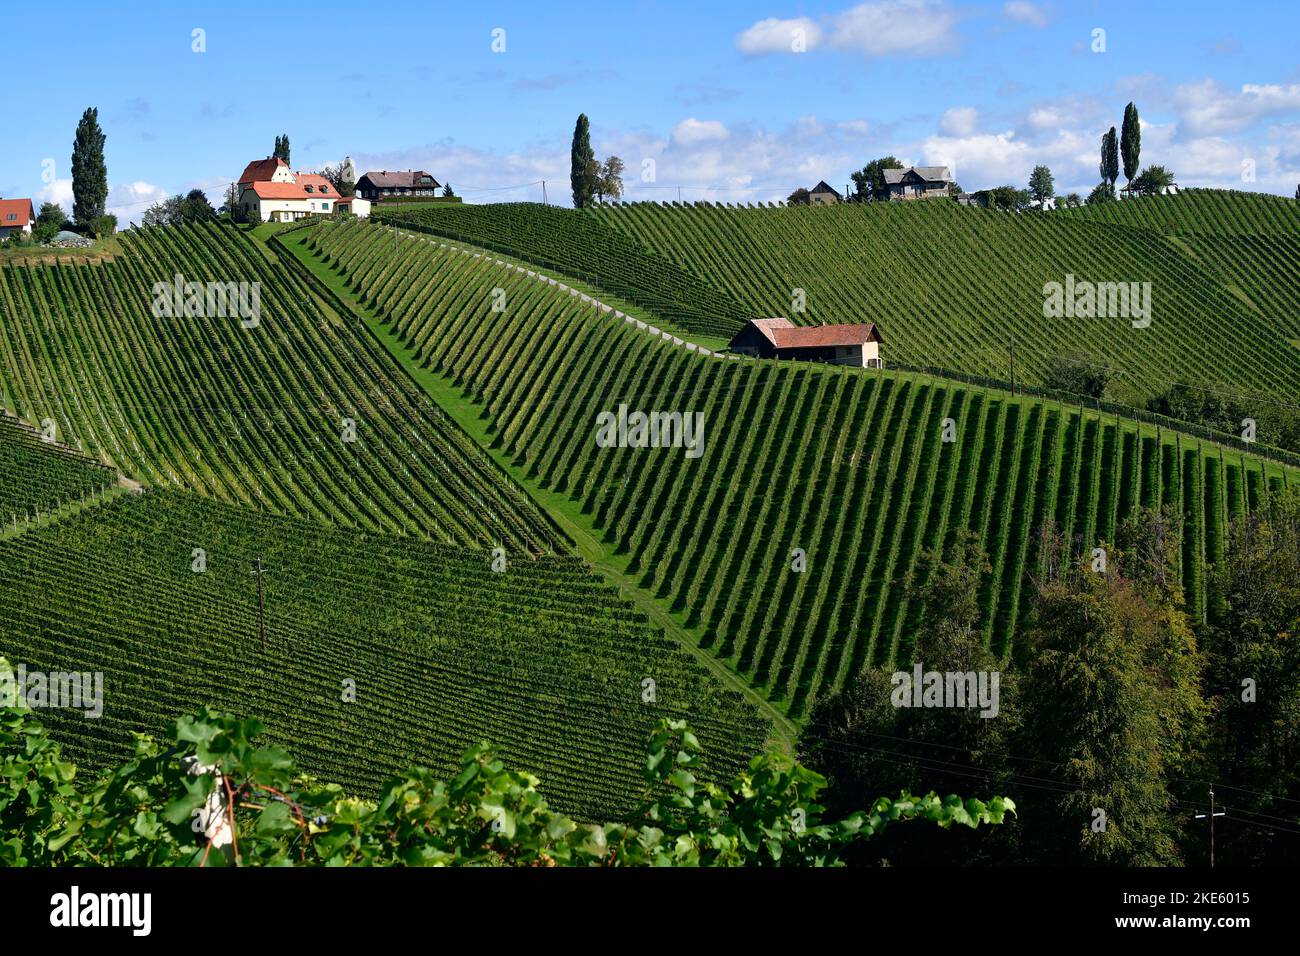 Austria, viñedos en las laderas escarpadas del valle de Sulm situado en la ruta vinícola de Estiria cerca de la frontera con Eslovenia, el paisaje montañoso también es k Foto de stock